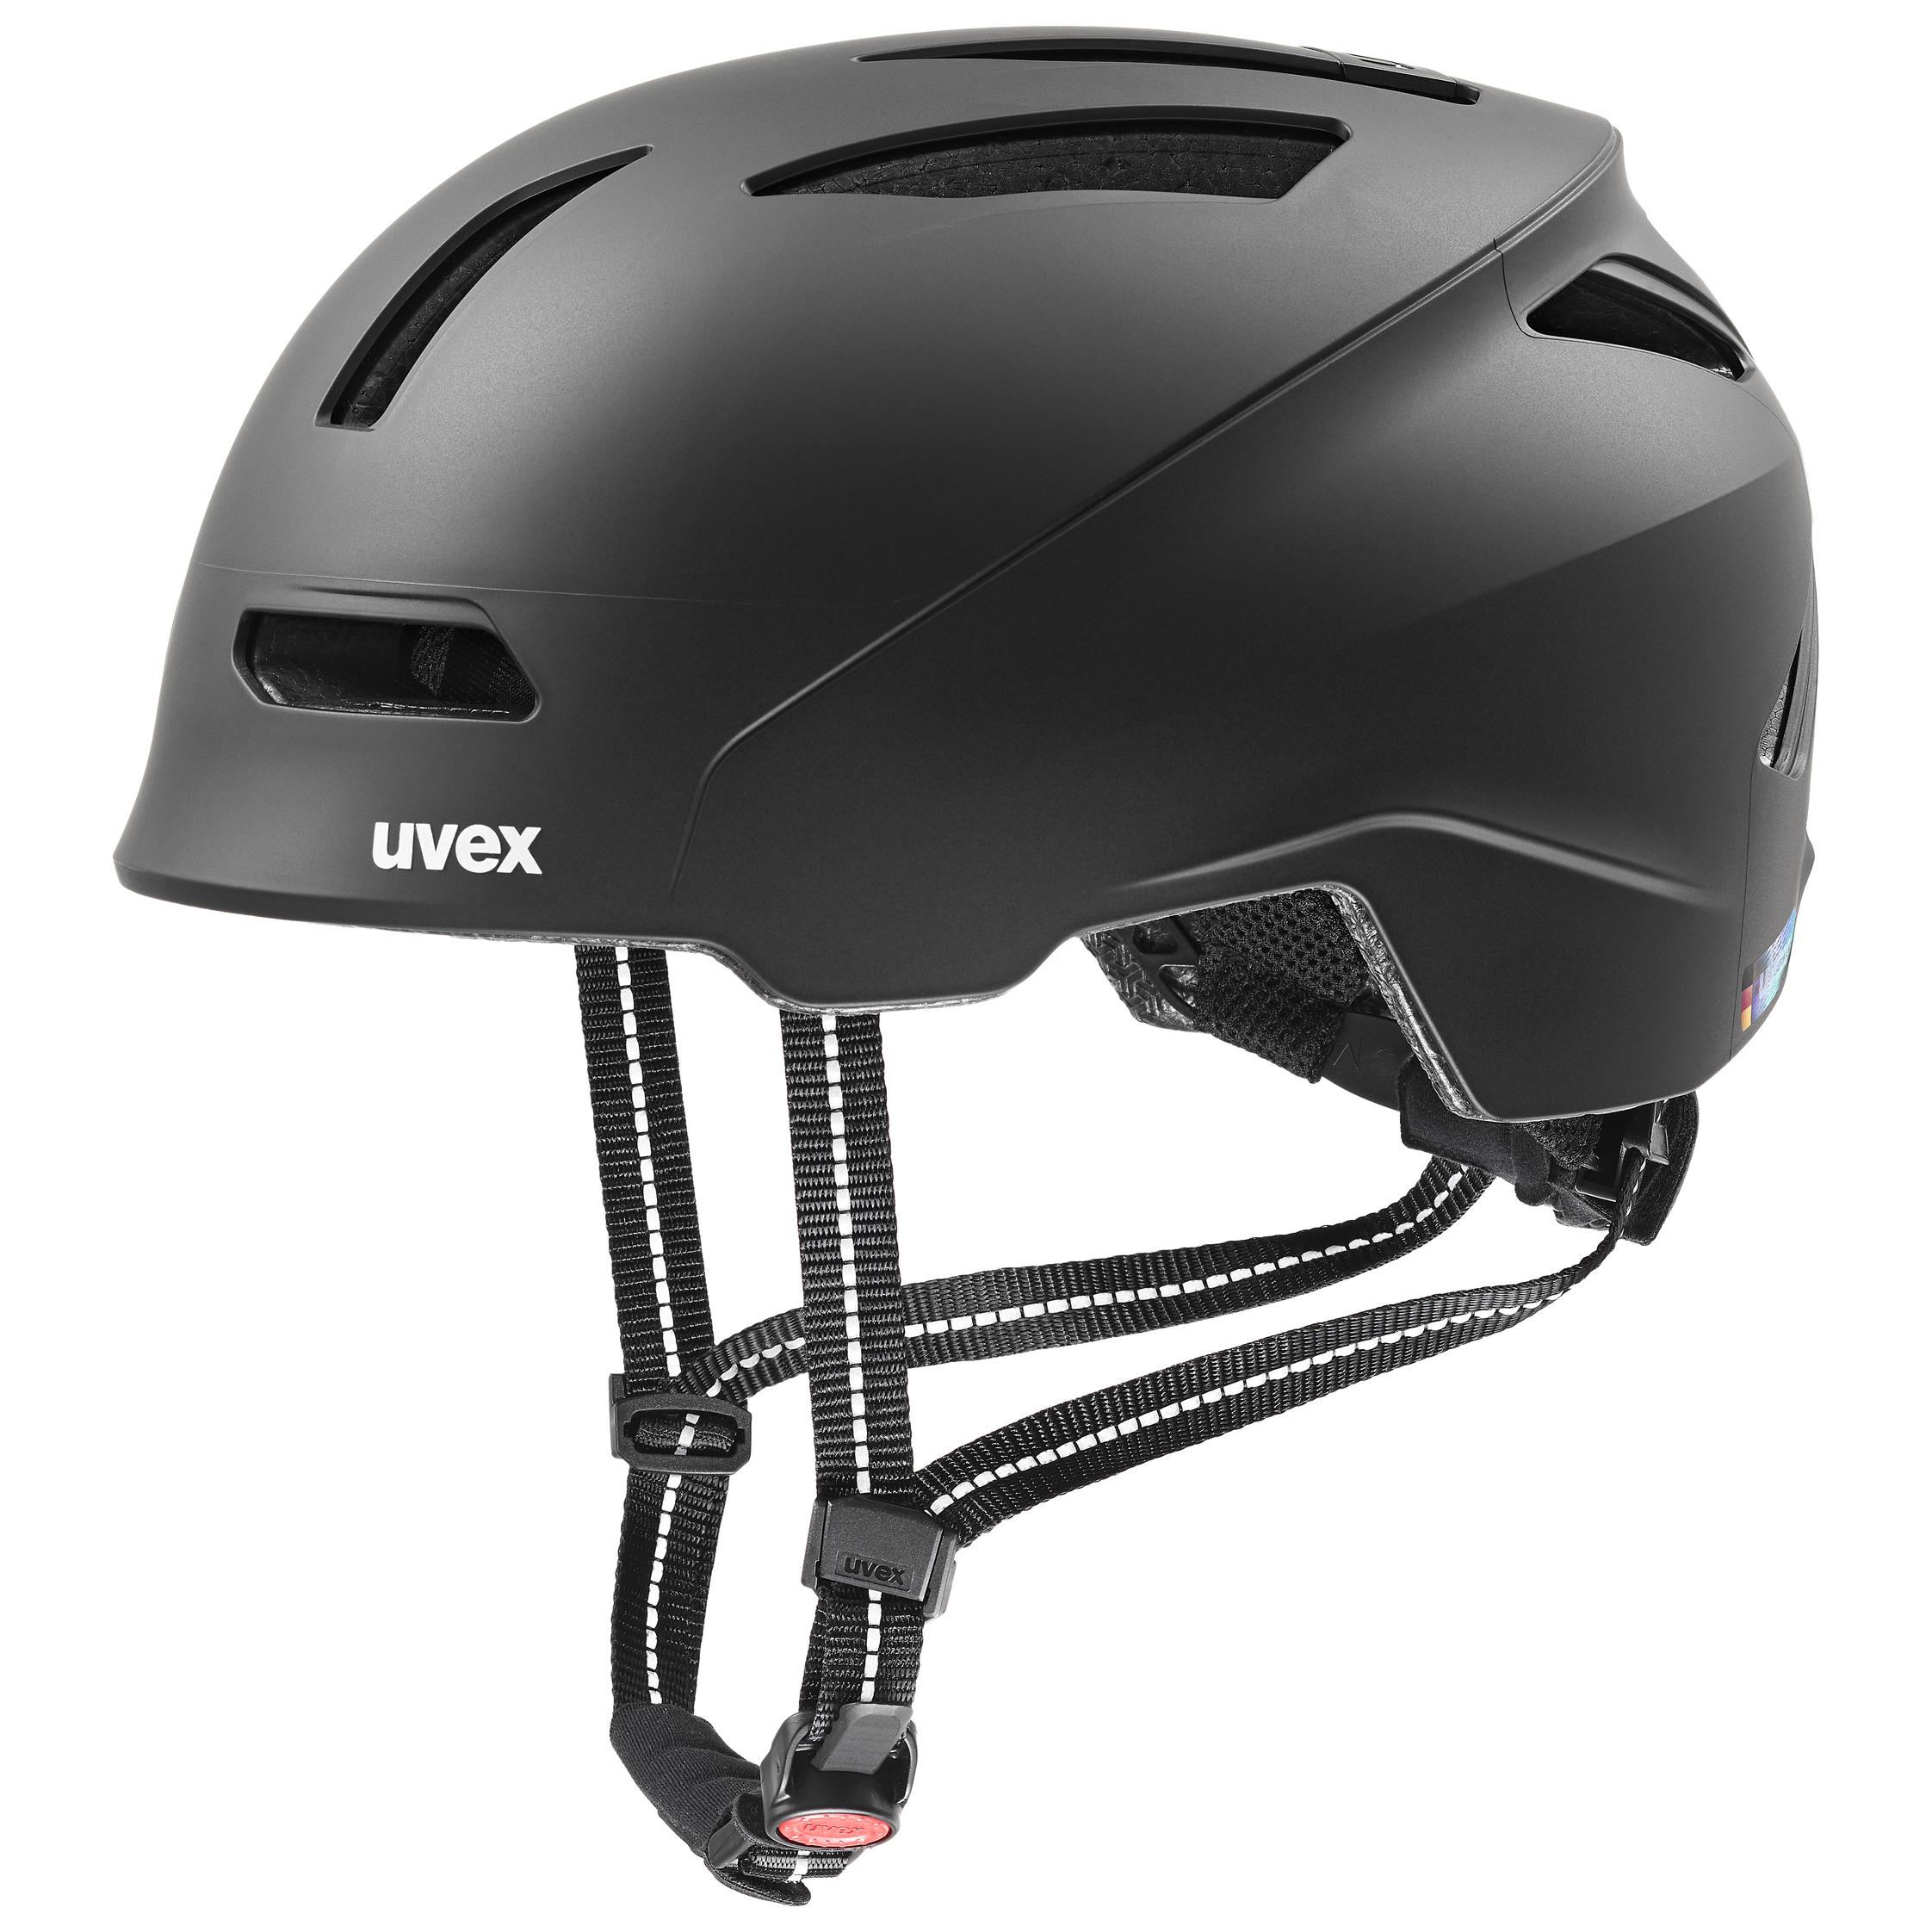 Taglia Unica Black Mat SL/Clear Visita lo Store di UvexUvex S5501092028 Bike Helmets Unisex Adulto 